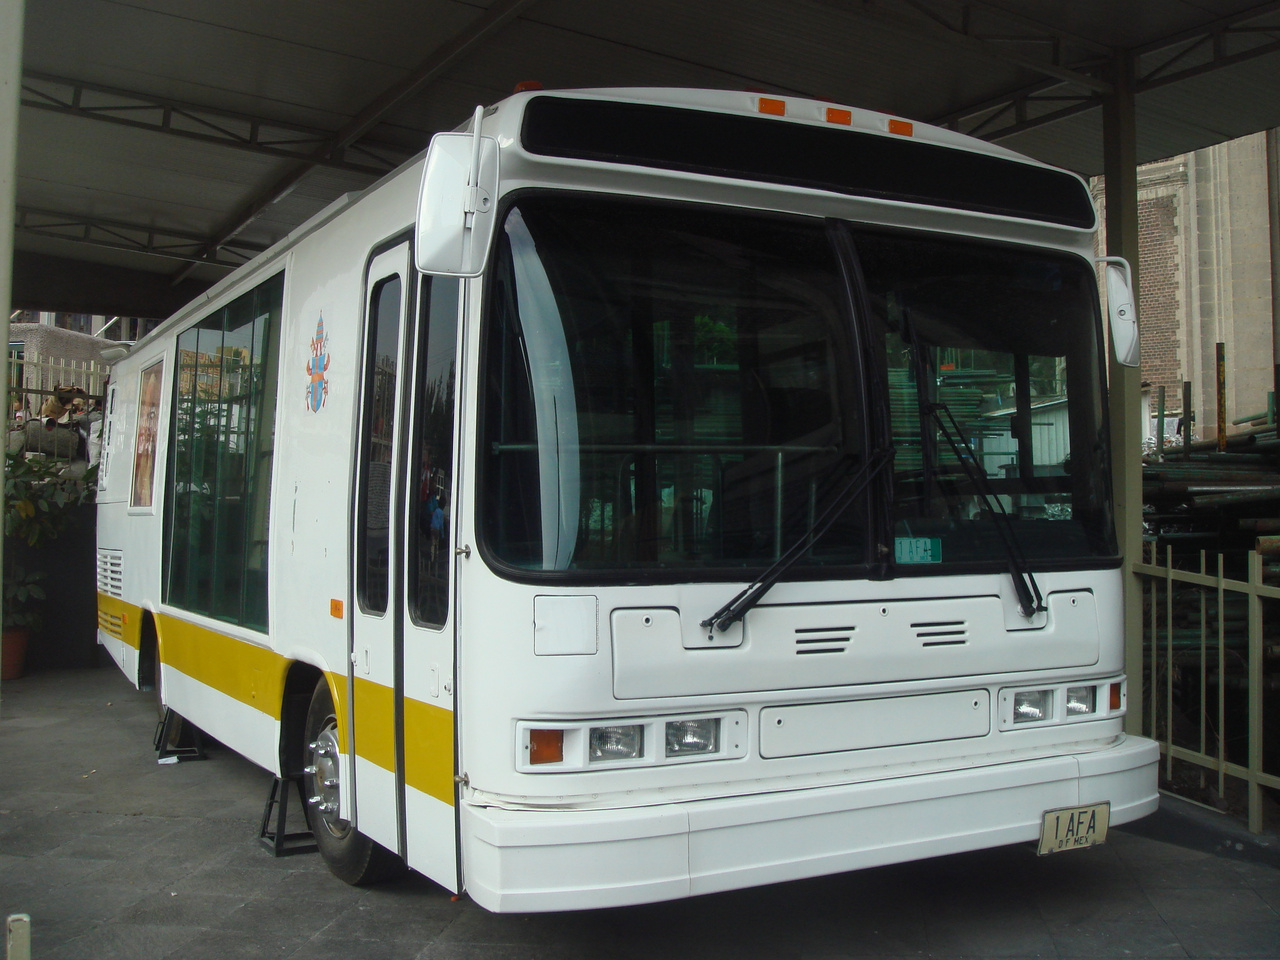 Neoplan AN 408 (1999): Az 1999-es mexikói pápalátogatáskor egy, az USA-ban gyártott Neoplan AN 408-ast alakítottak át pápamobillá. A városi busz utasterében csak egyetlen egy hatalmas fotel volt, amelyben ülve II. János Pál egész Mexikót beutazta. A jármű napjainkban emlékhelyként funkcionál